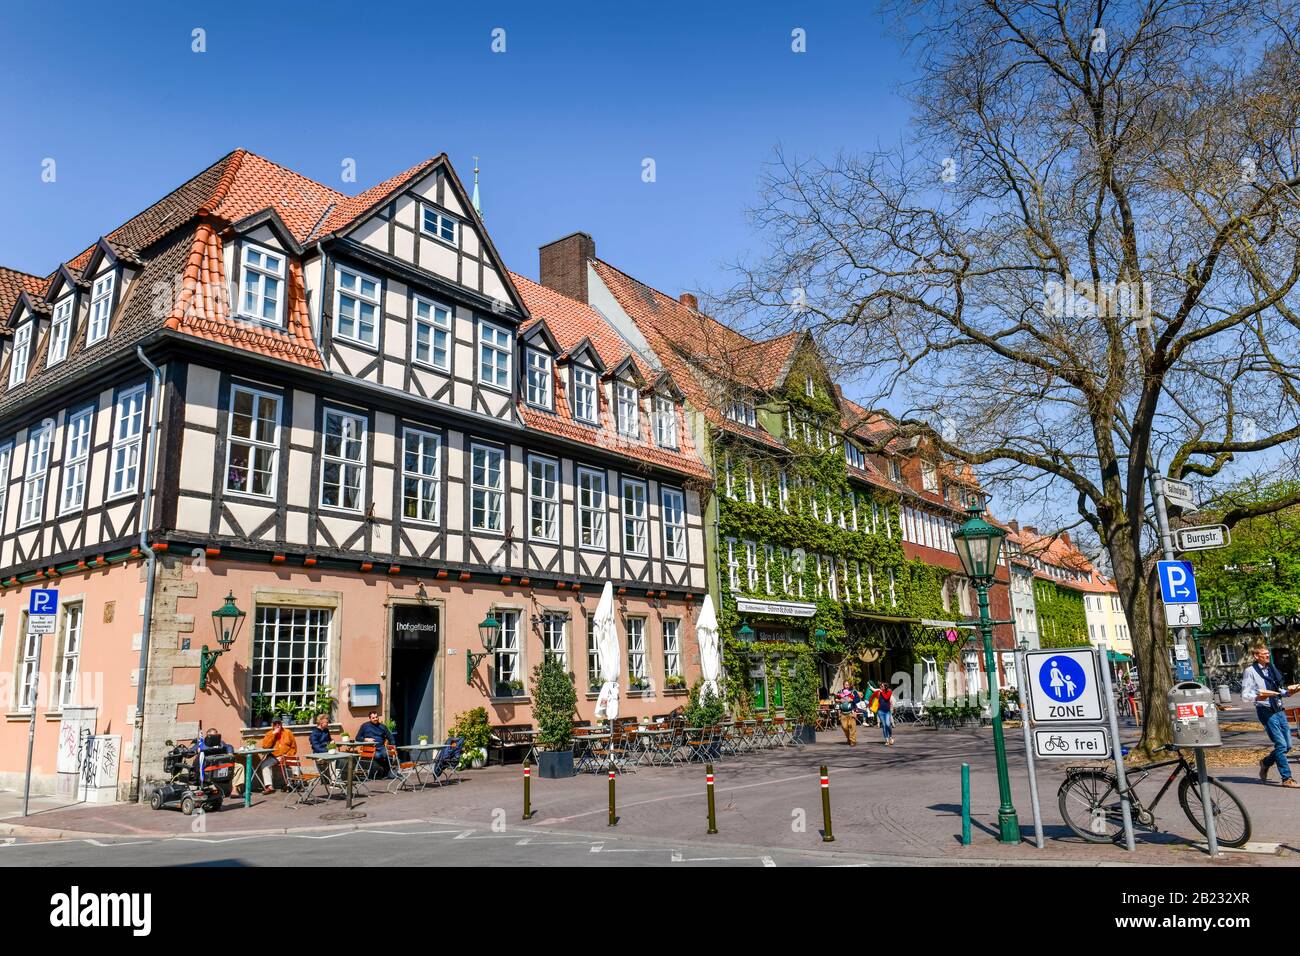 Fachwerkhäuser, Ballhofplatz, Altstadt, Hannover, Niedersachsen, Deutschland Foto Stock